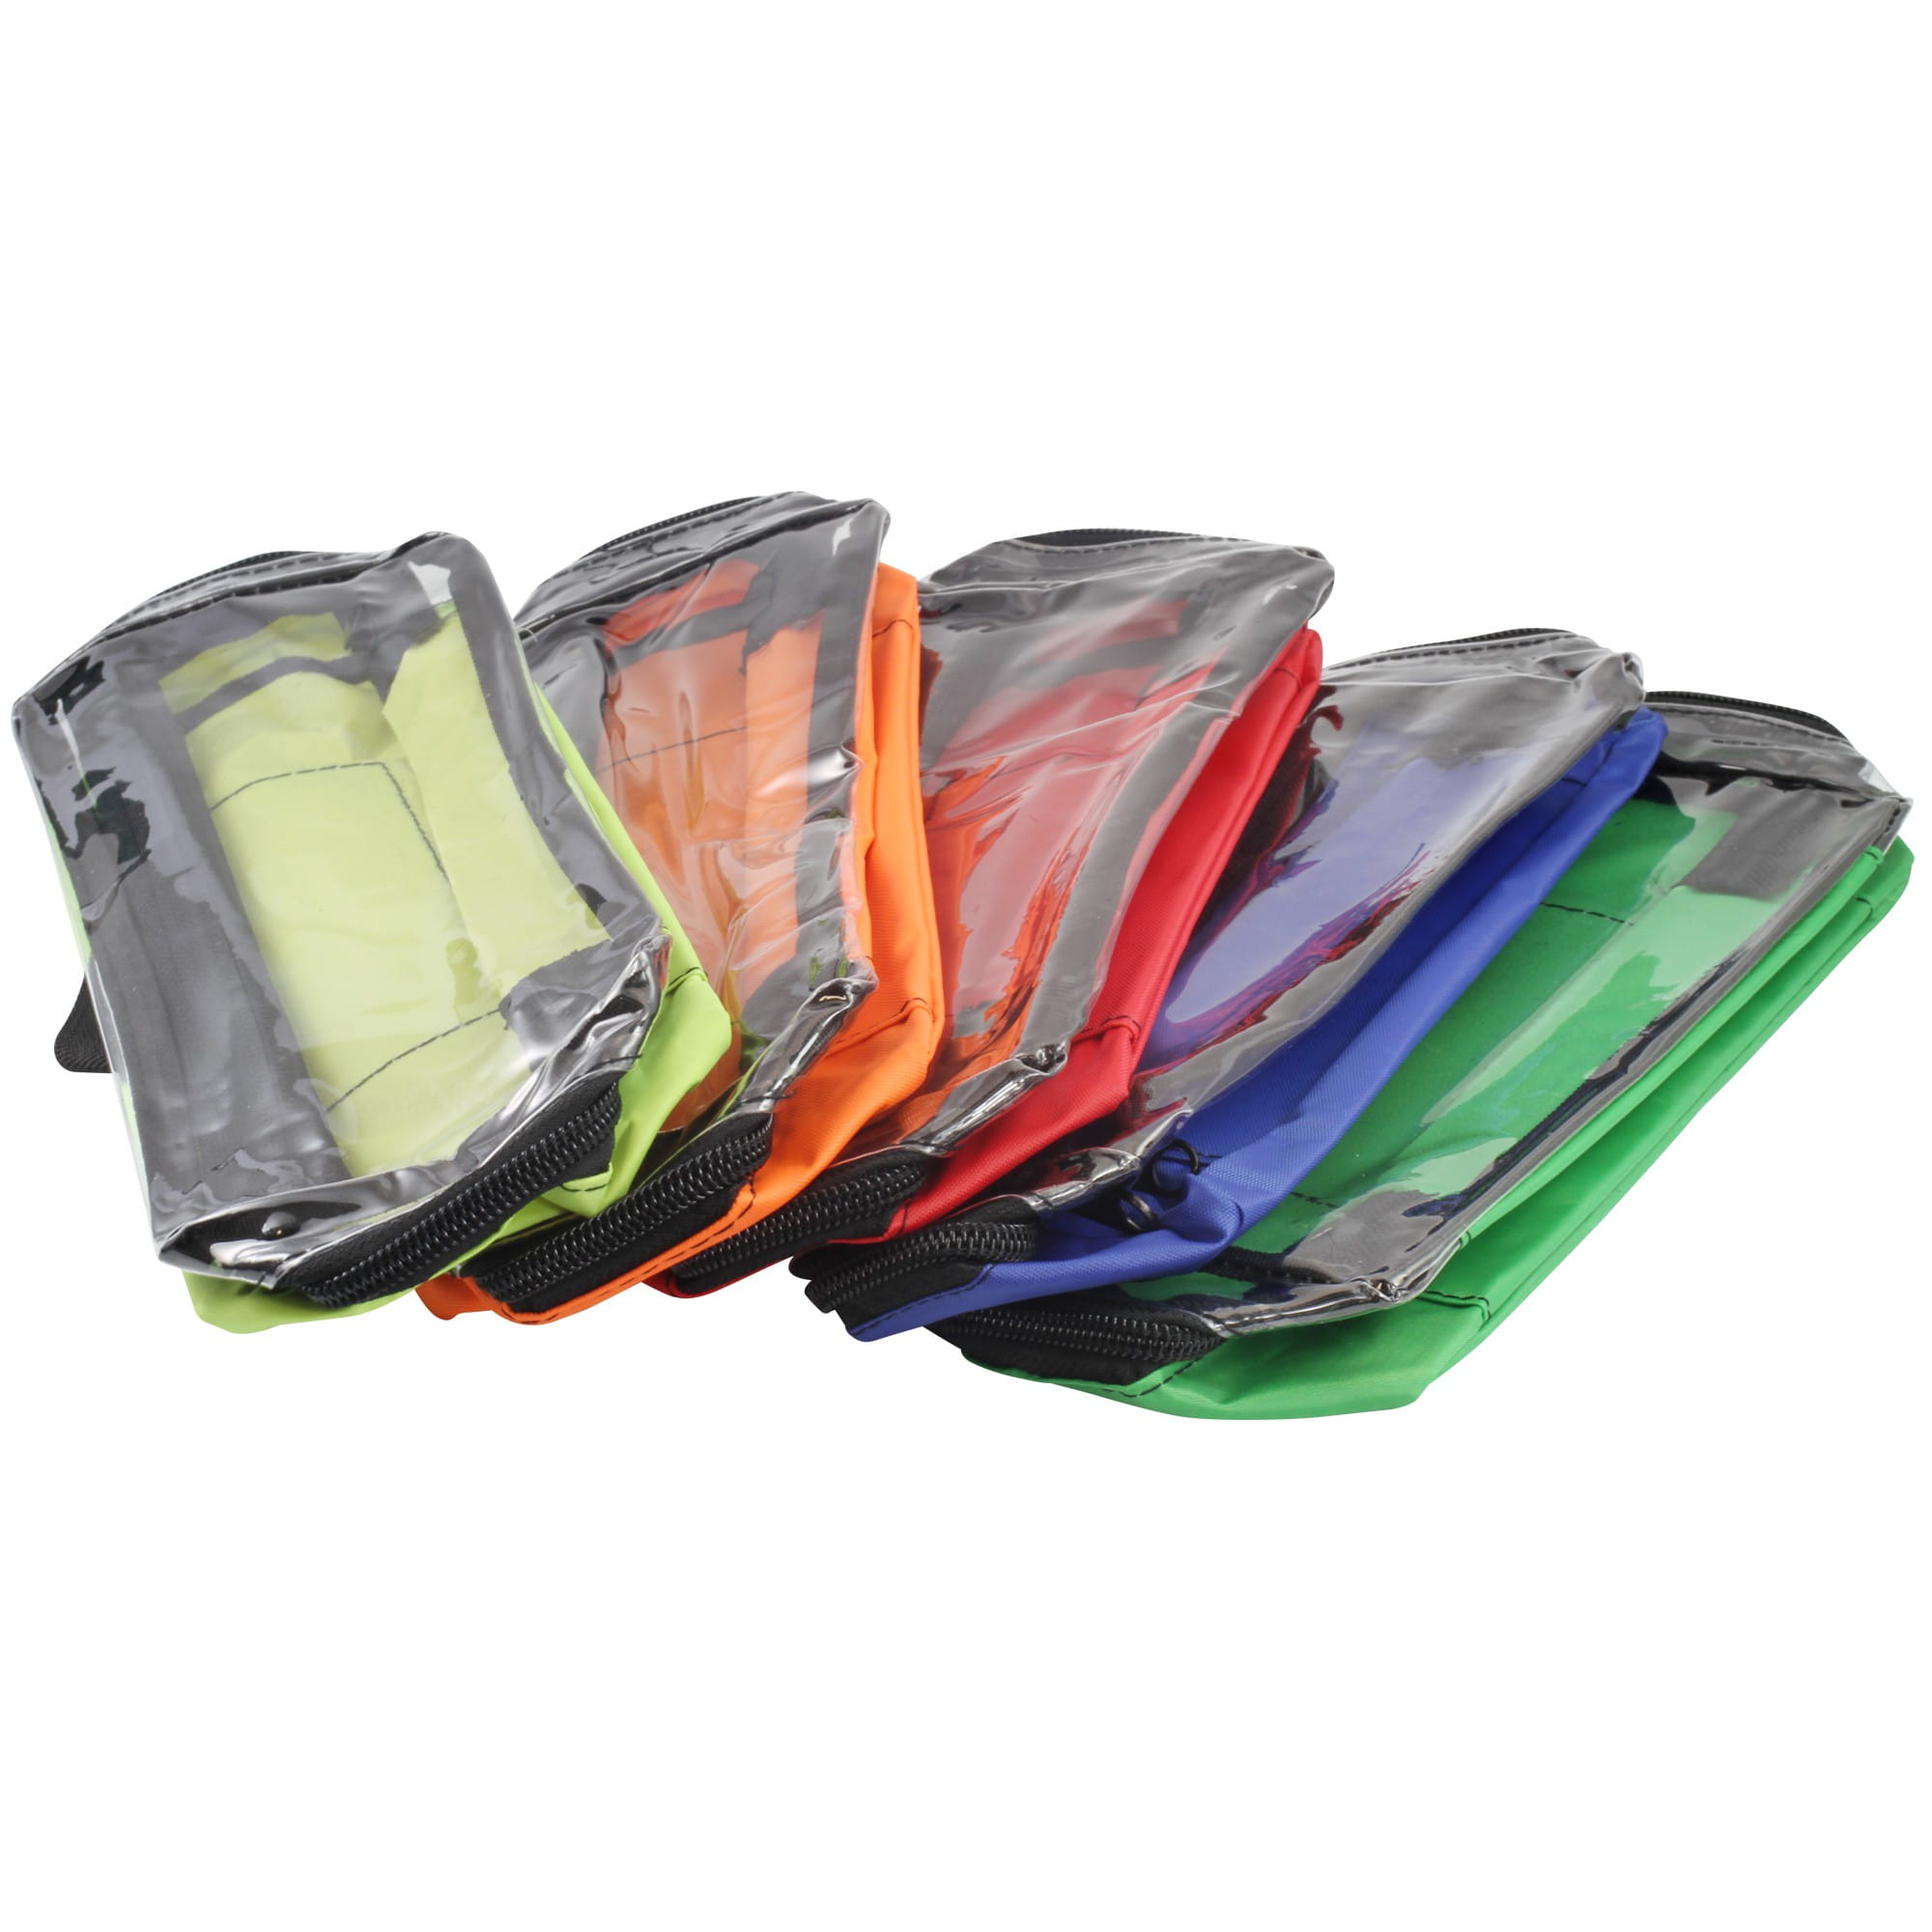 Modultaschen SET Nylon in 5 Farben für Notfallrucksack & Notfalltasche